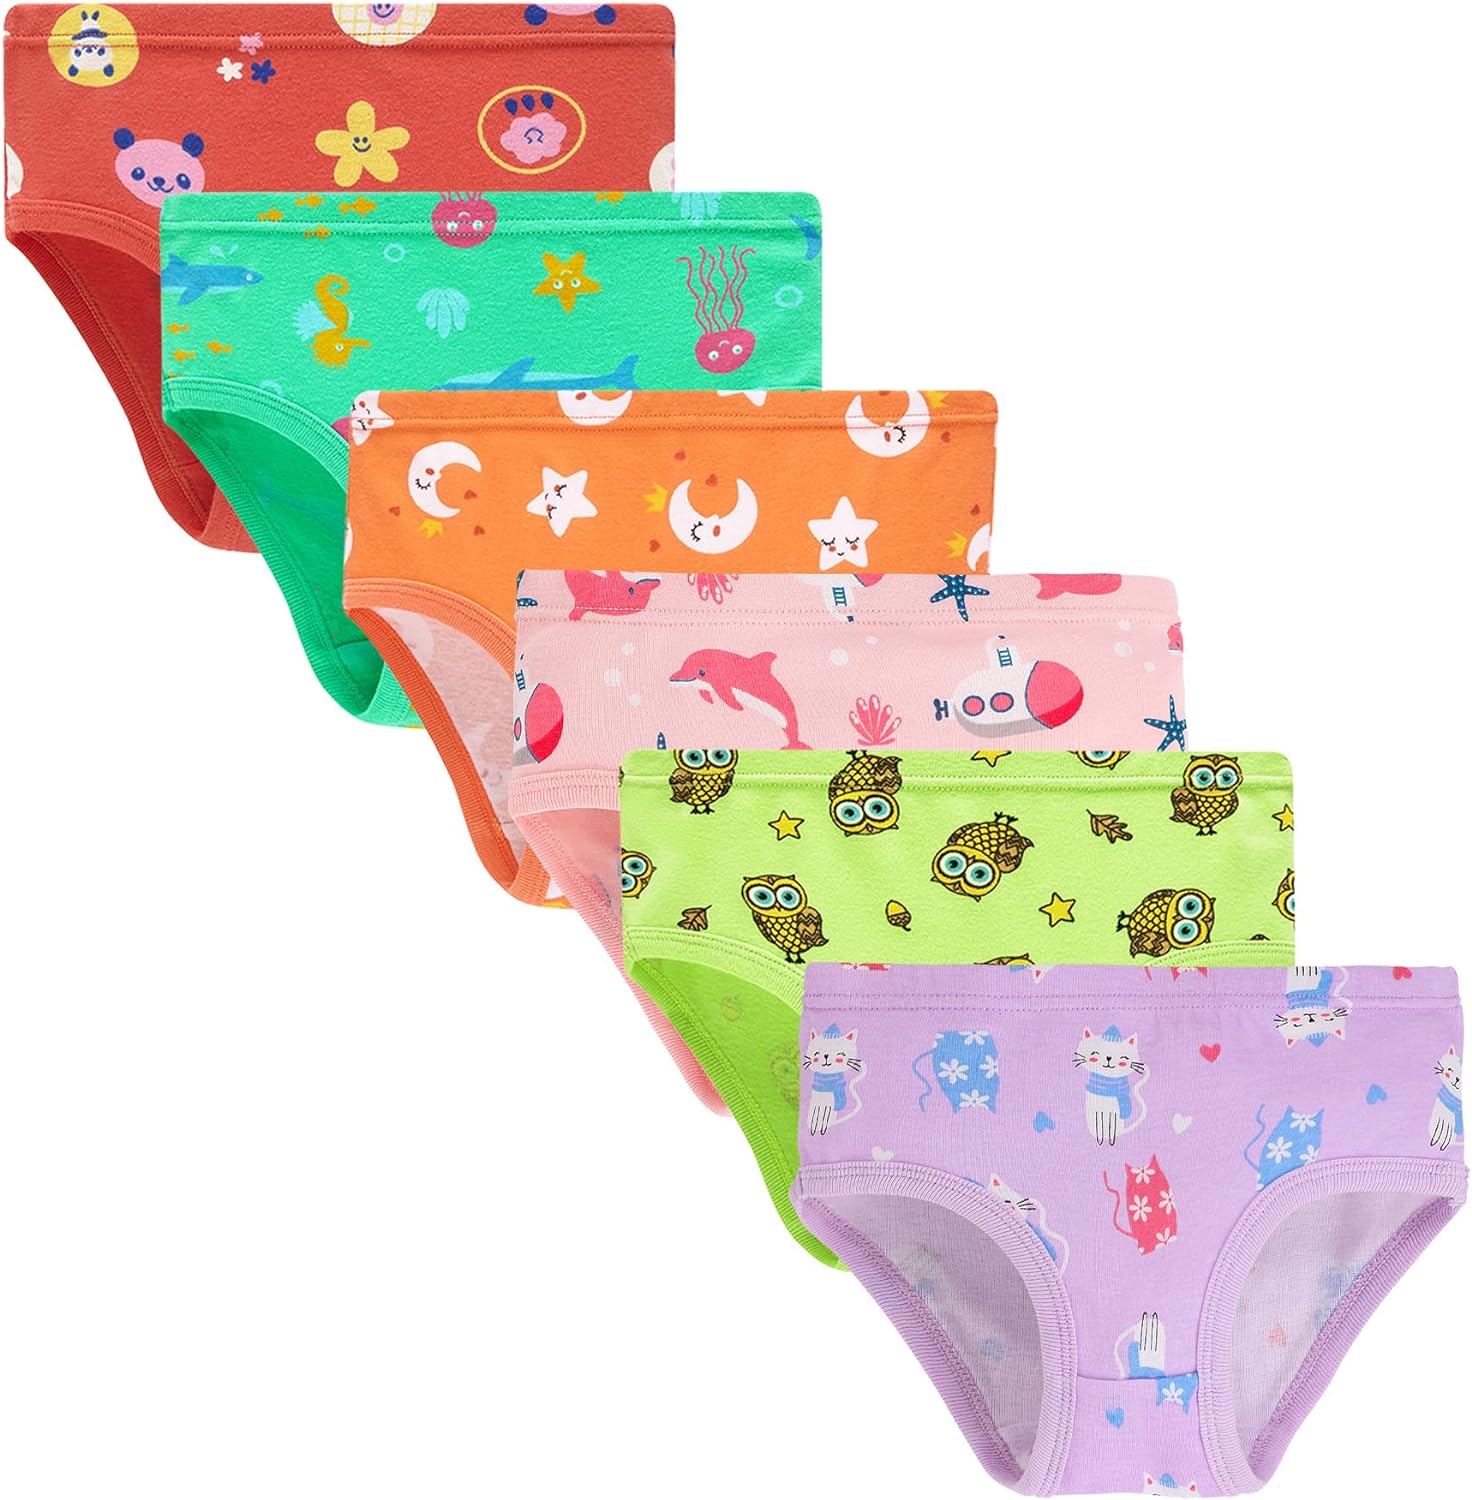 Boboking Soft Cotton Girls' Panties Boyshort Little Girls' Underwear  Toddler Undies